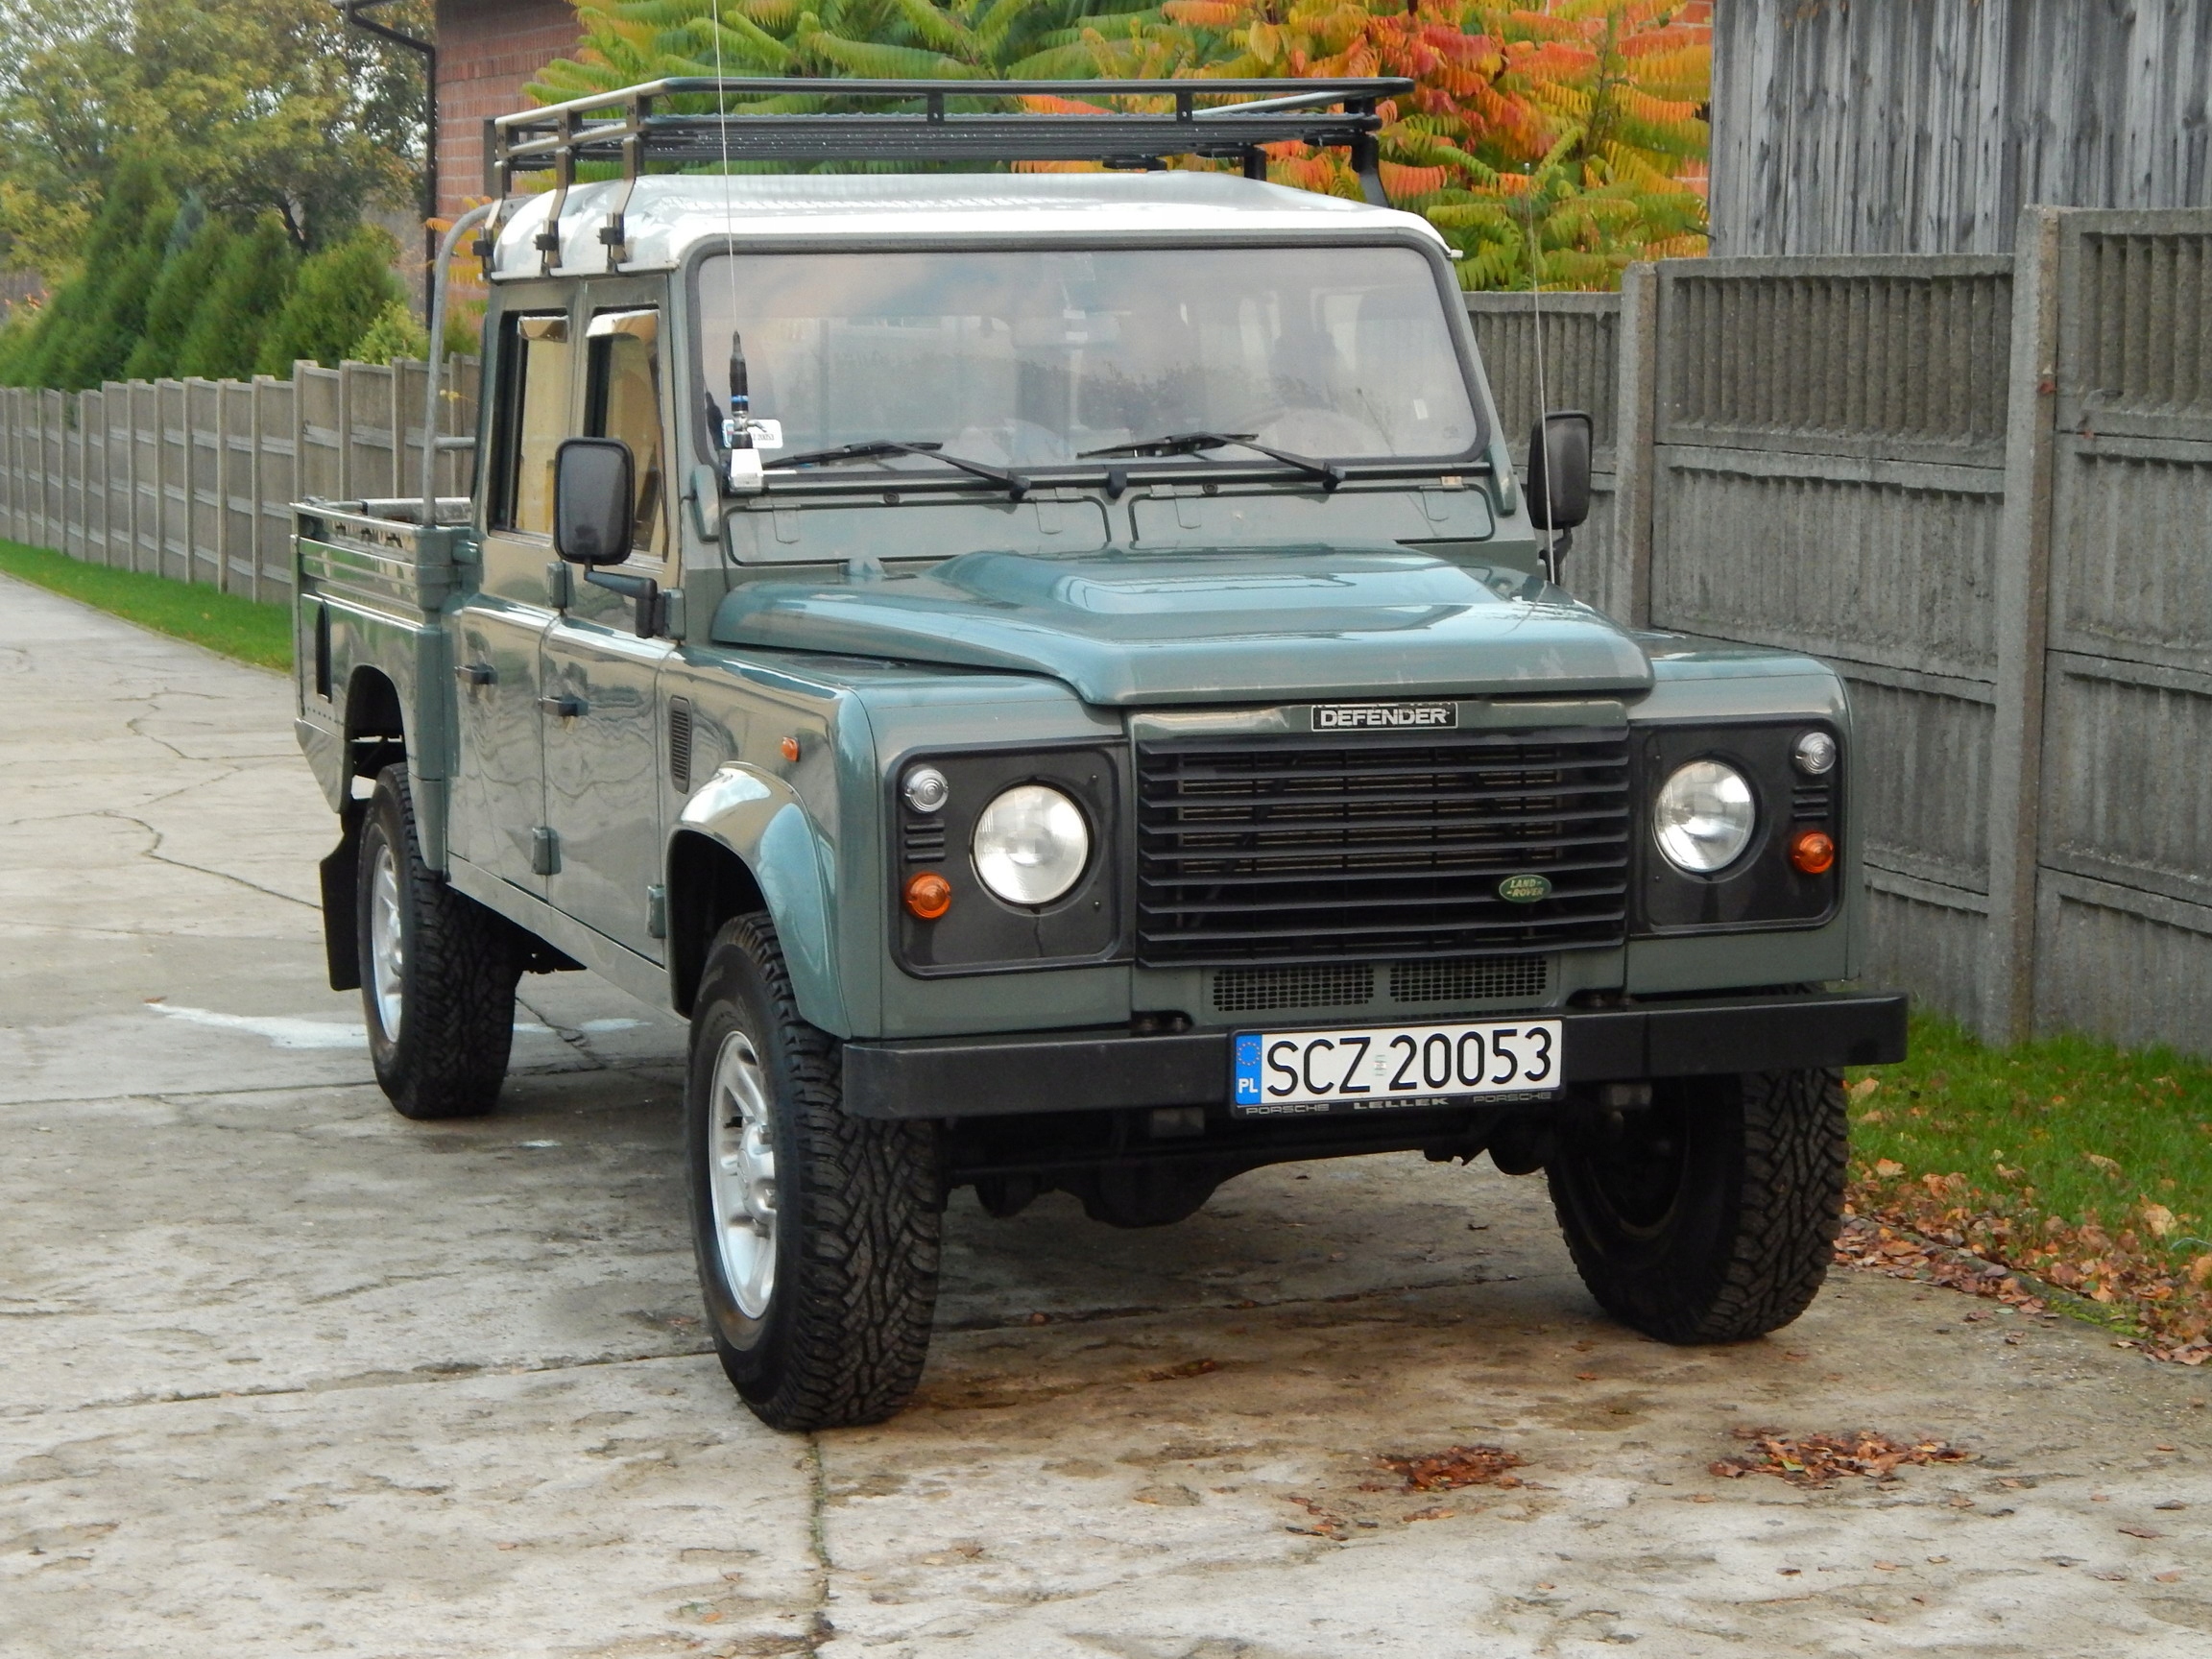 Bagażnik Dachowy Land Rover Defender 130 Z Siatką Za 2350 Zł Z Częstochowa - Allegro.pl - (7982672812)